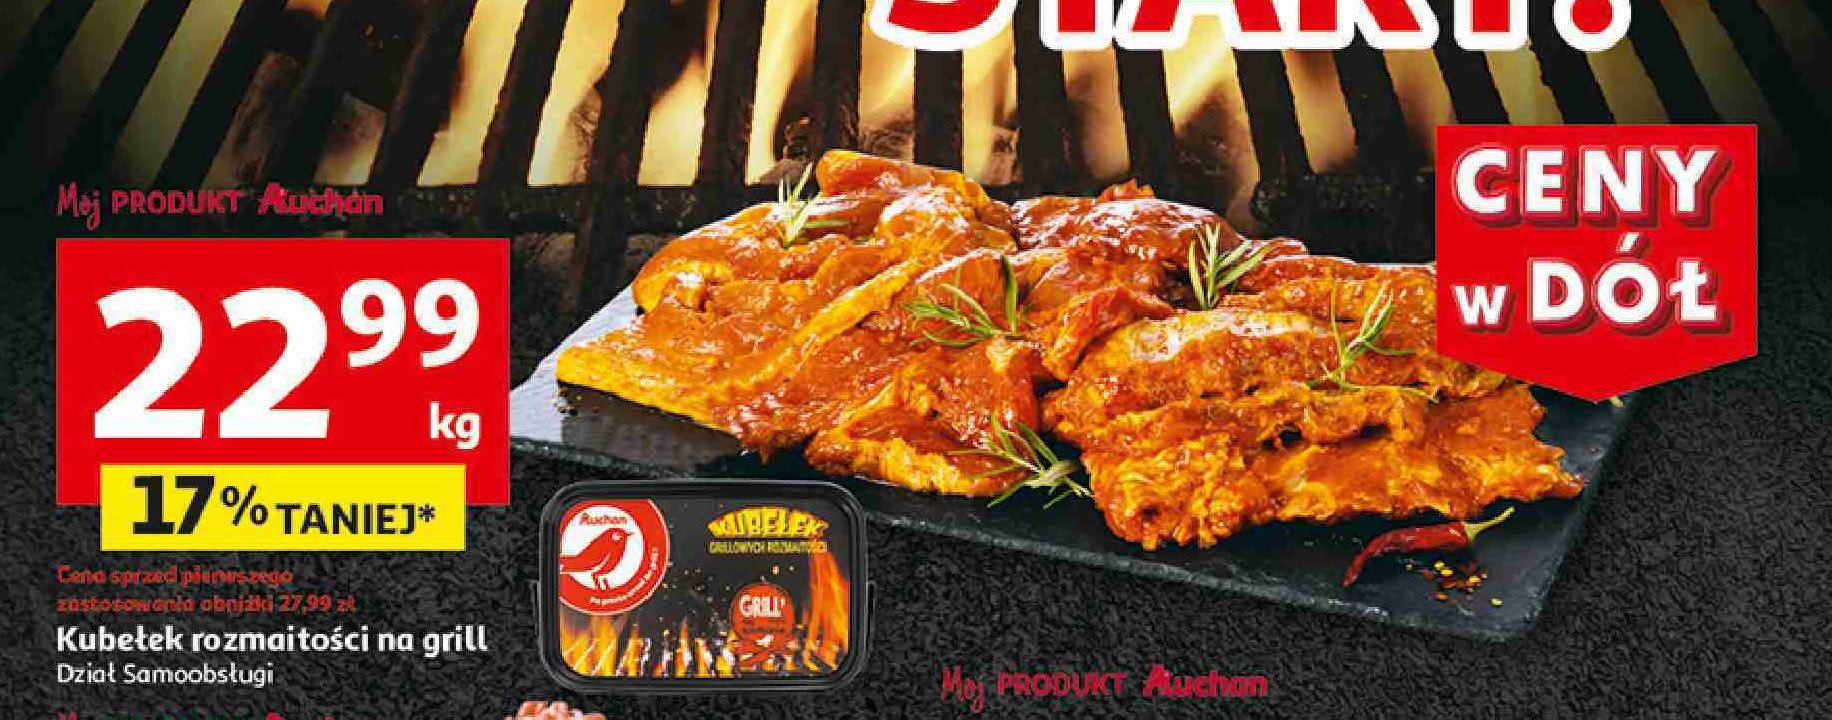 Kubełek mięsny na grill Auchan różnorodne (logo czerwone) promocja